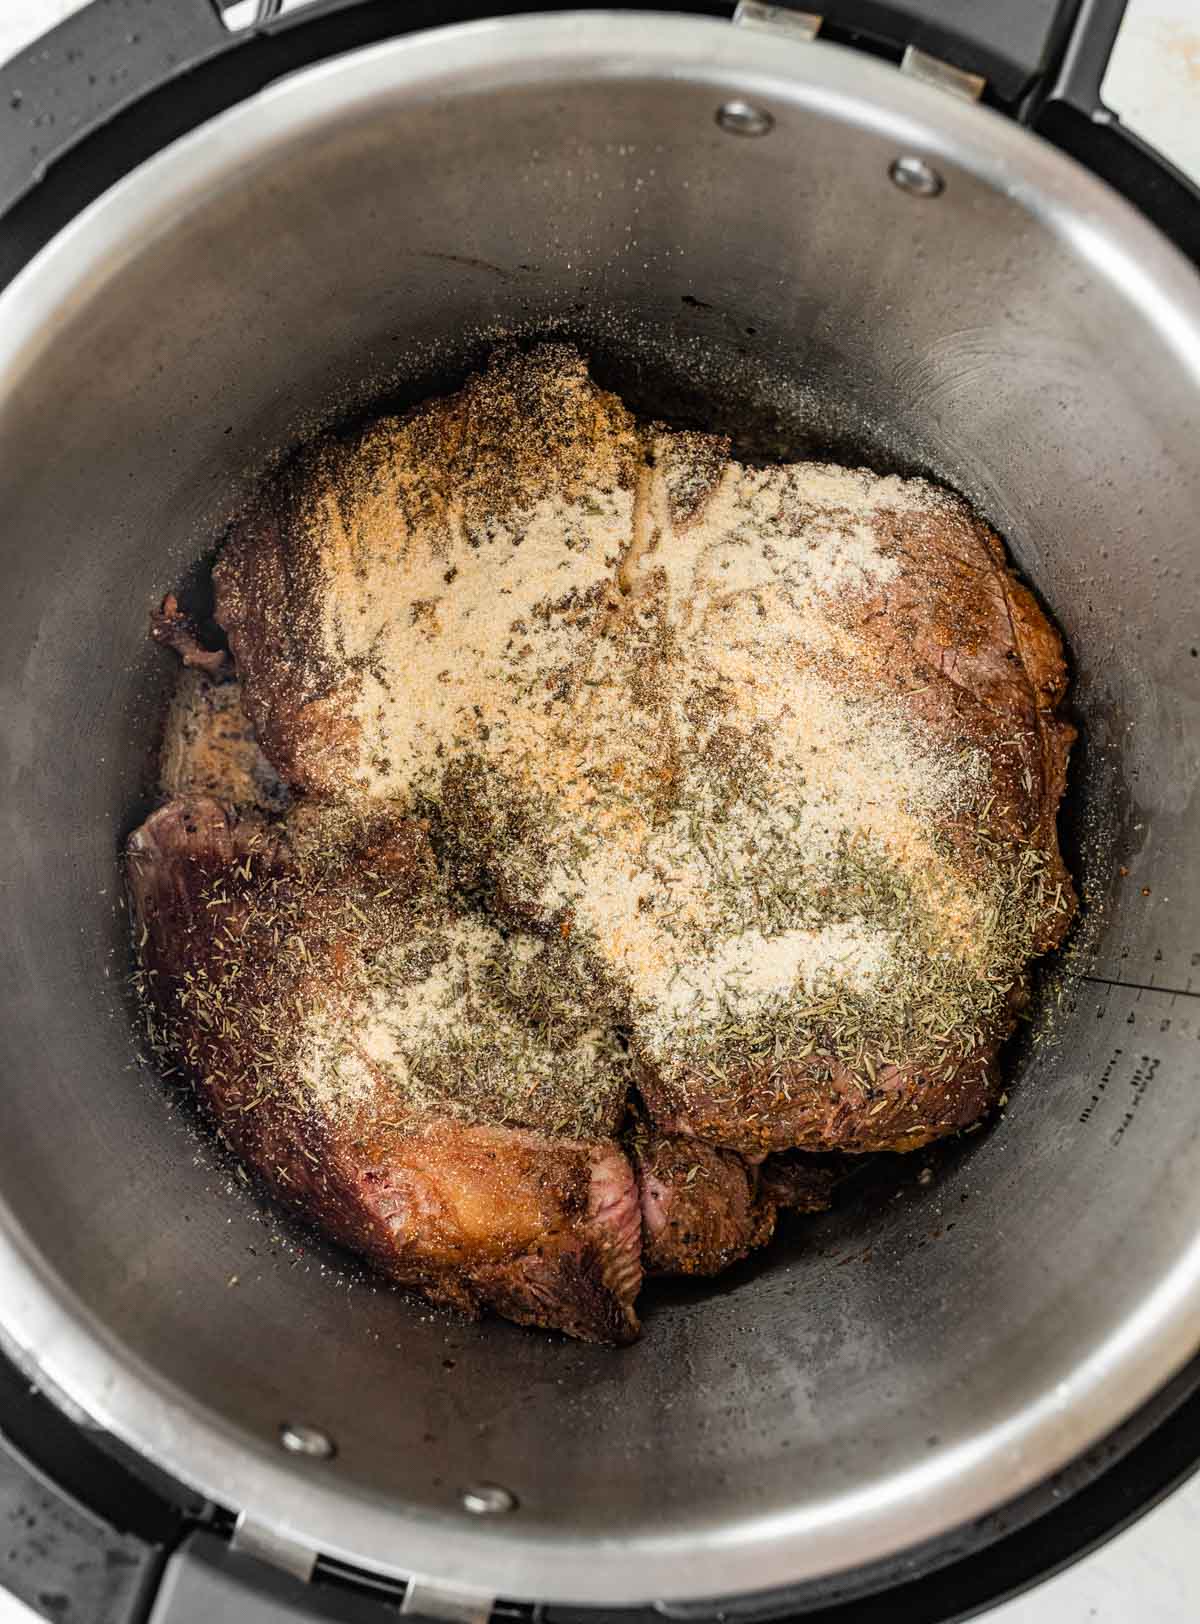 seasoning a seared roast in an instant pot